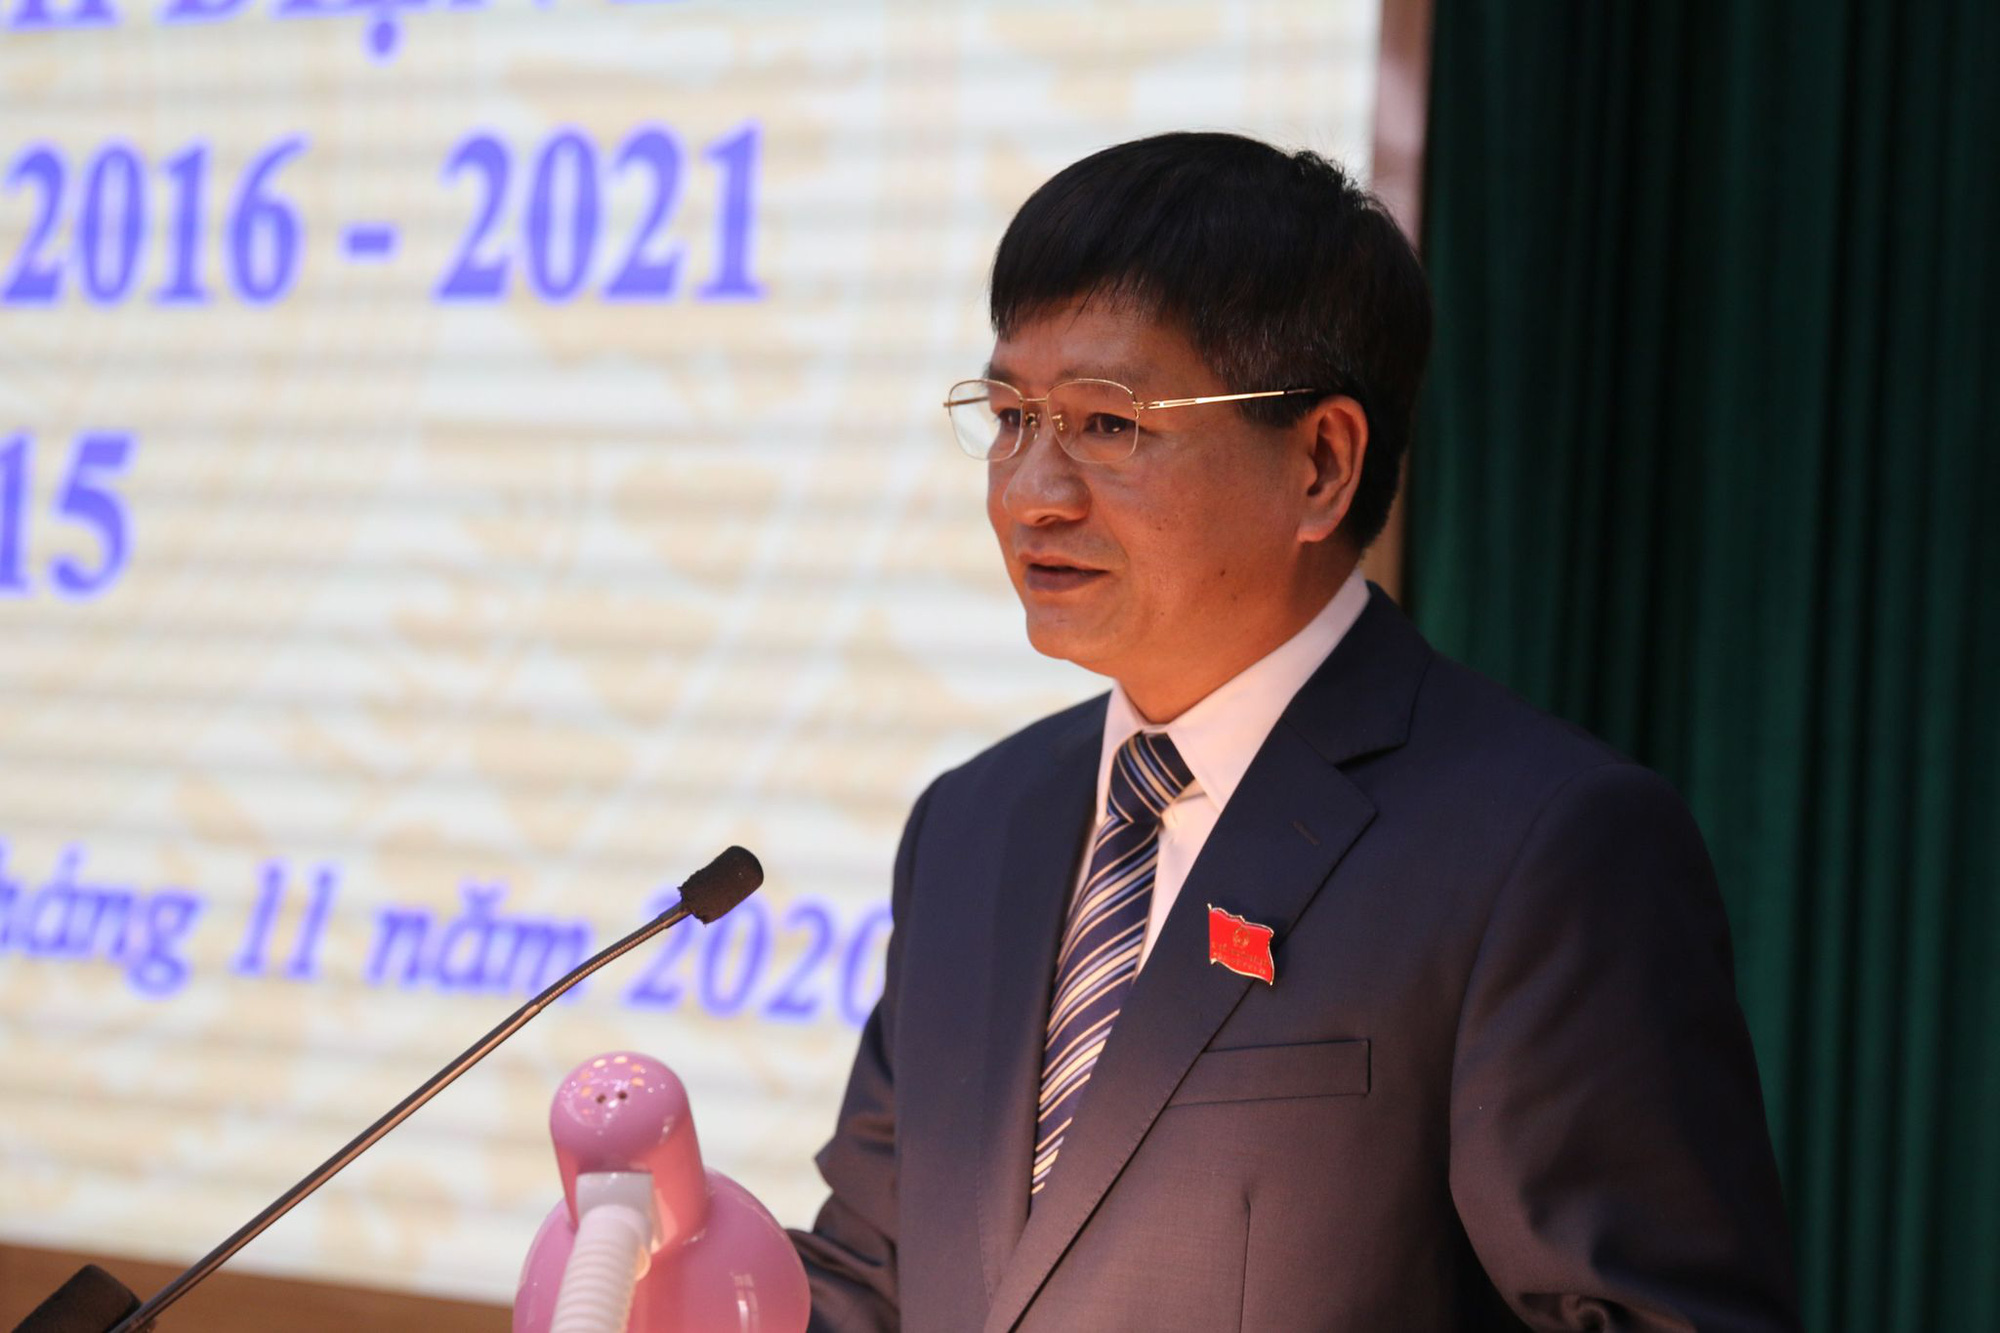 Phê chuẩn ông Lê Thành Đô làm Chủ tịch UBND tỉnh Điện Biên - Ảnh 1.